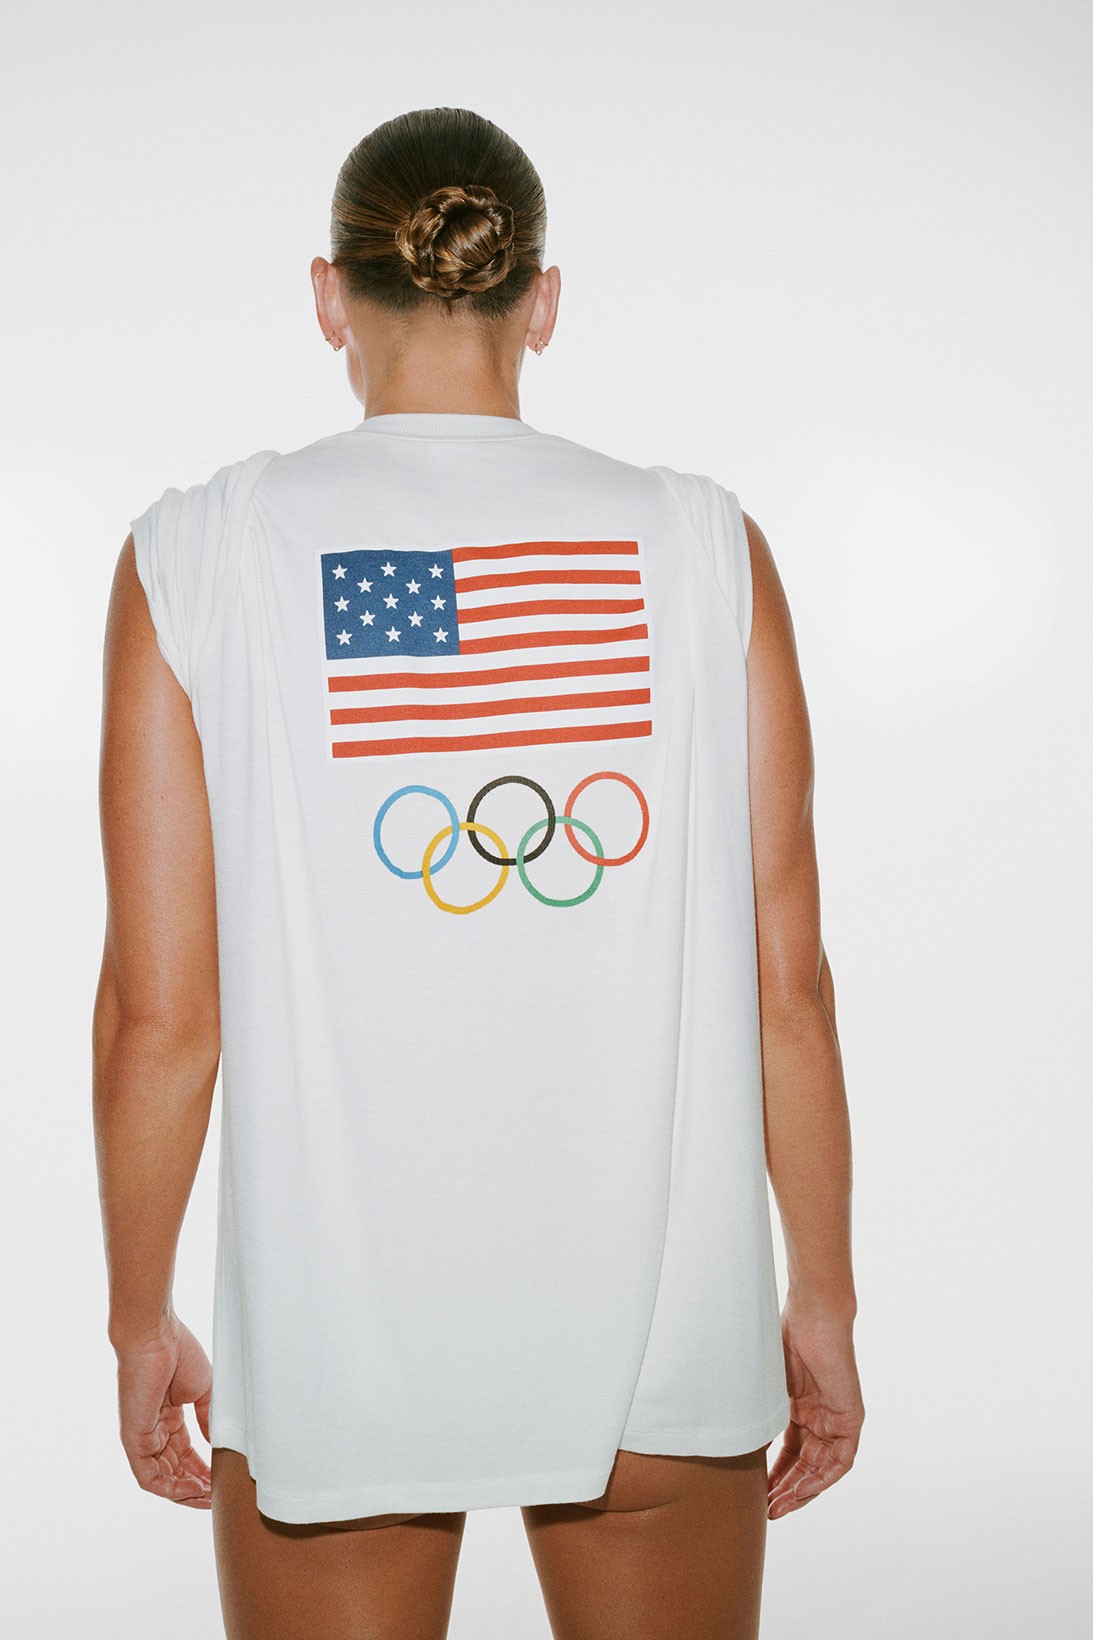 Спортсменки из олимпийской сборной США получат комплекты белья от Skims Ким Кардашьян (фото 8)